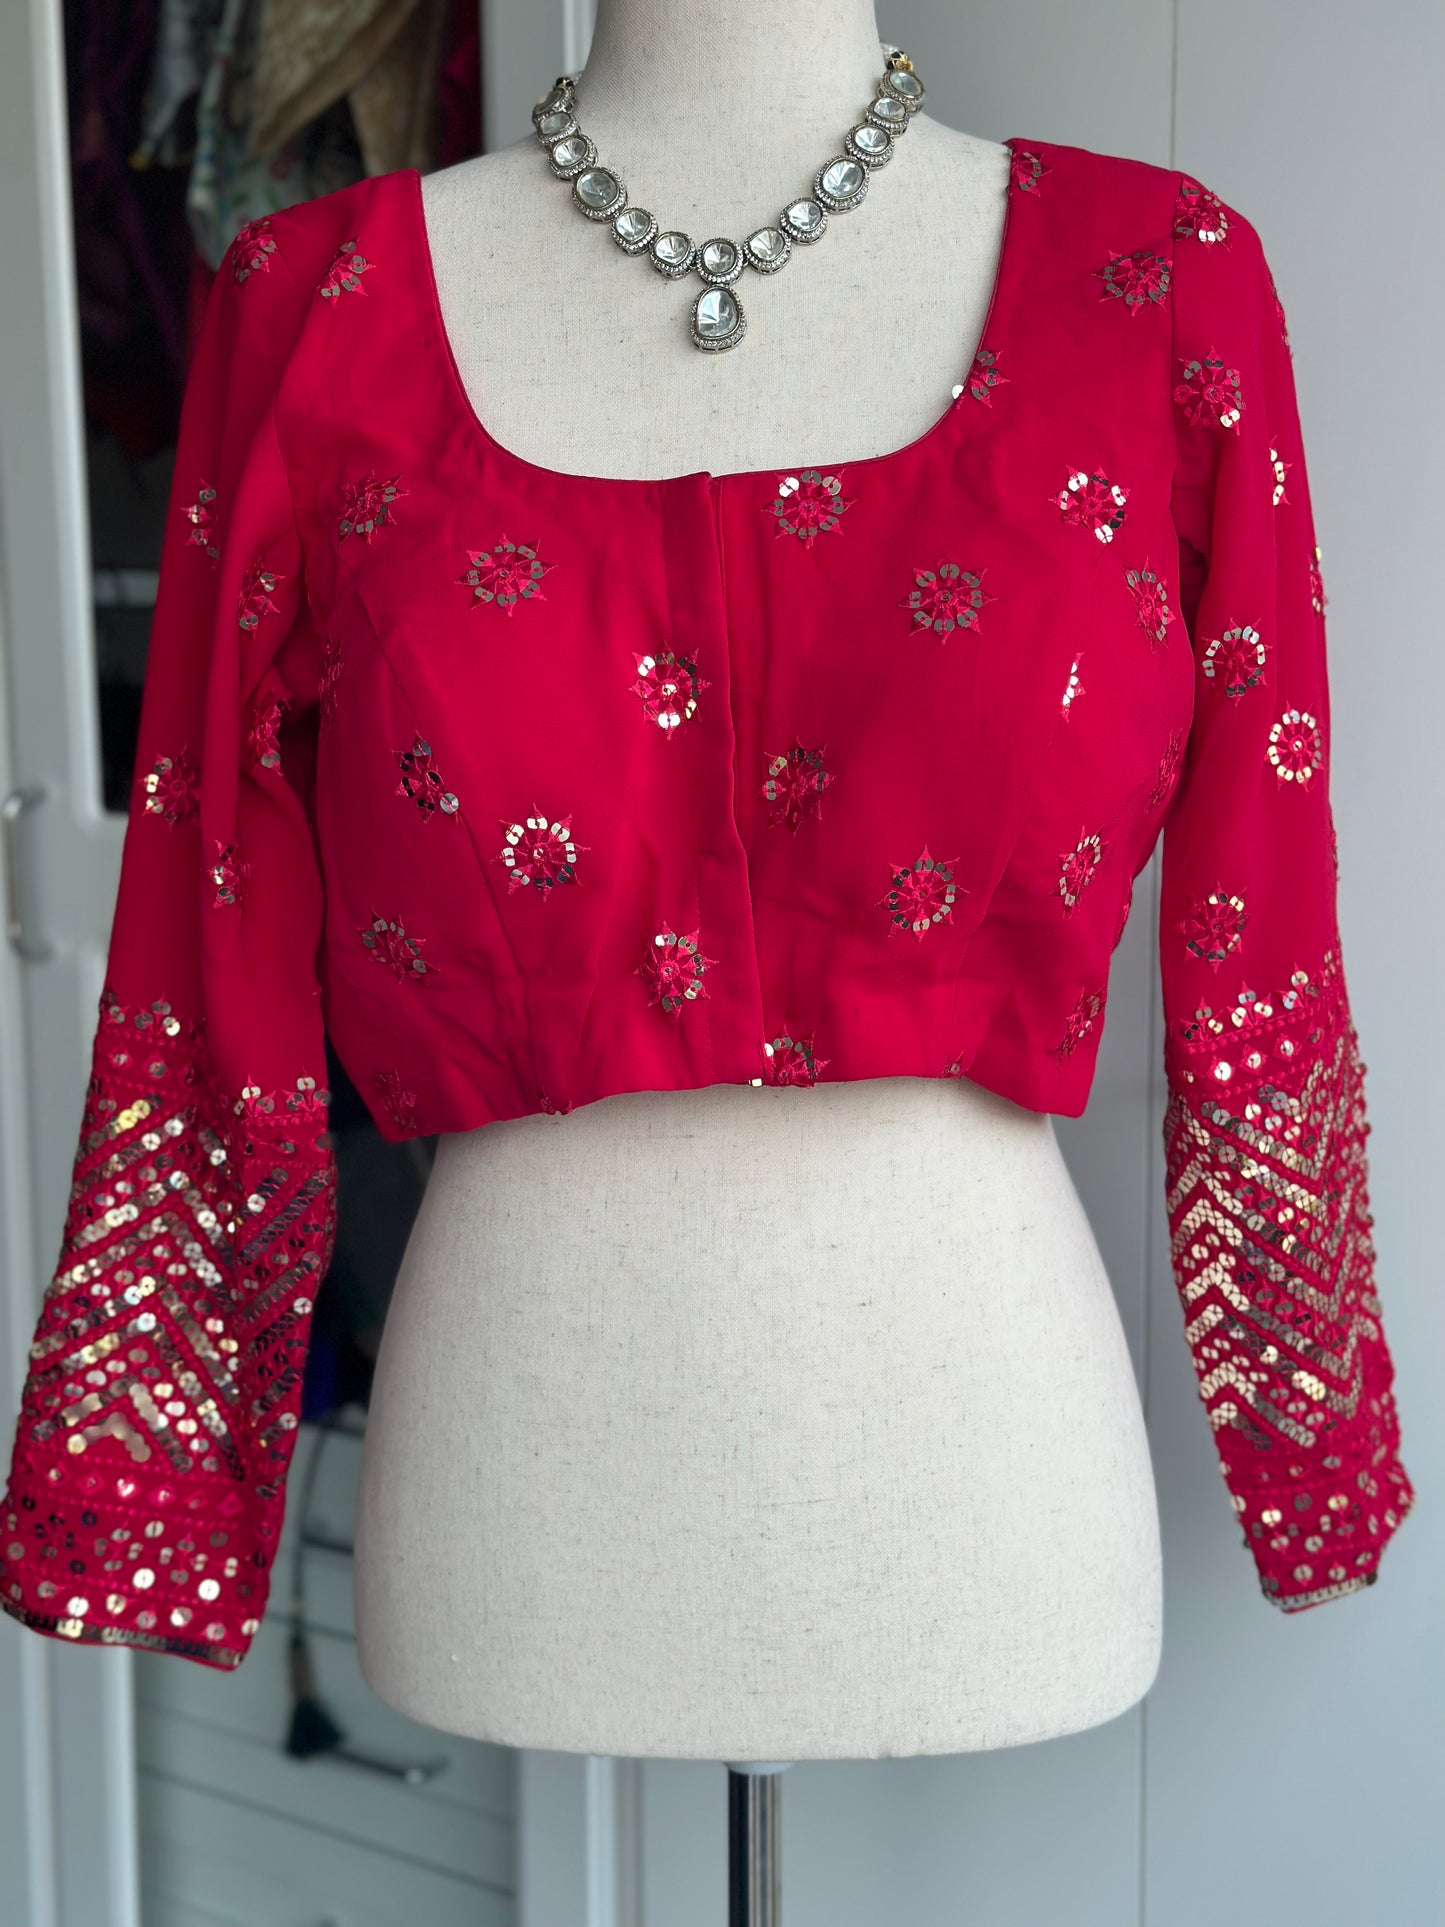 Pure georgette blouse | Saree blouse | Party wear blouse